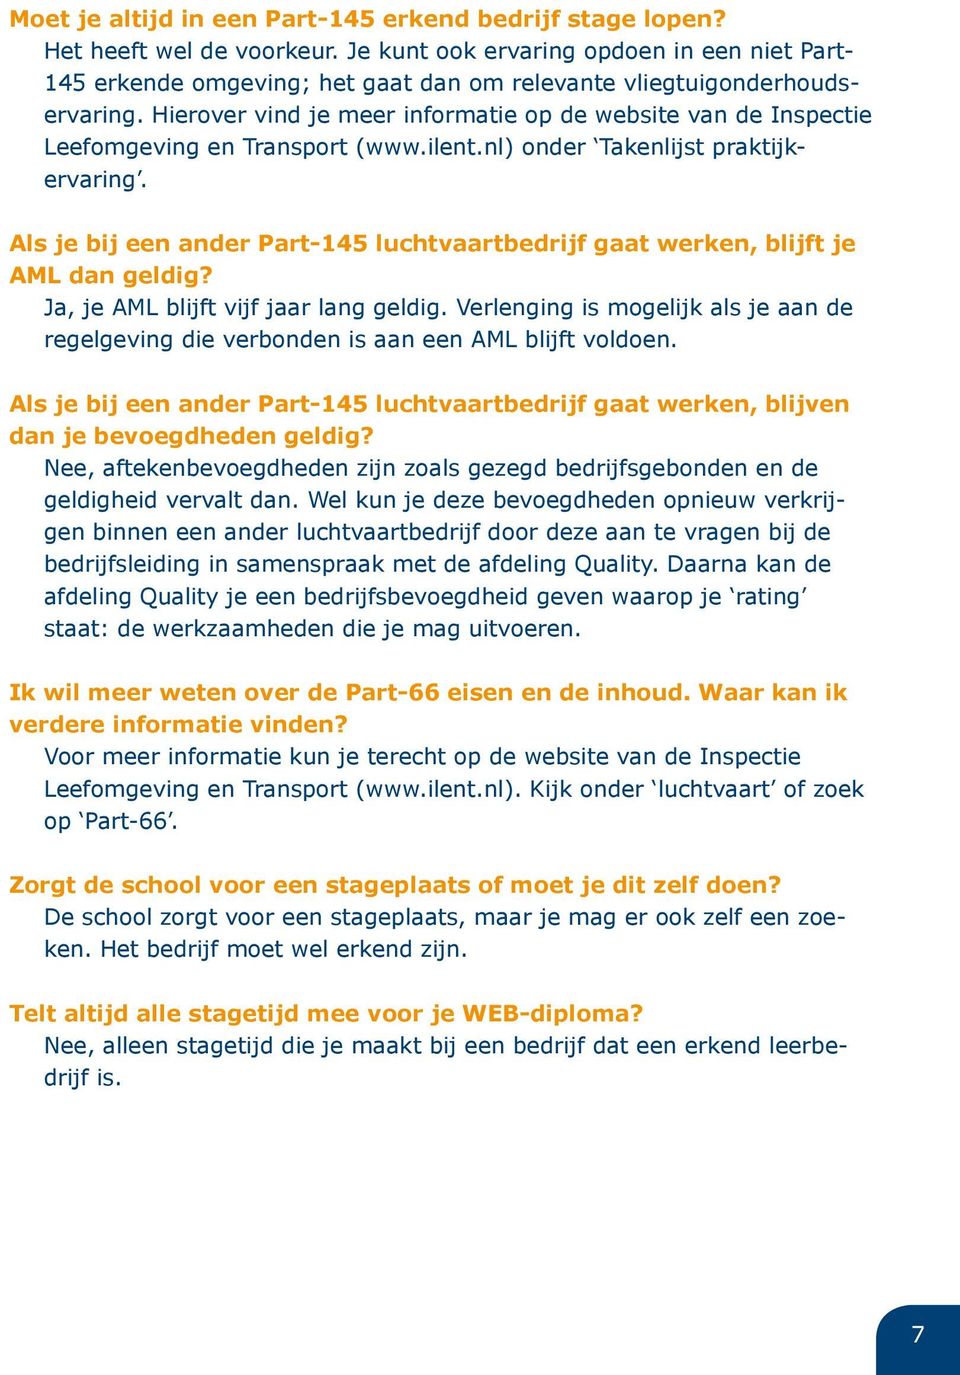 Hierover vind je meer informatie op de website van de Inspectie Leefomgeving en Transport (www.ilent.nl) onder Takenlijst praktijkervaring.